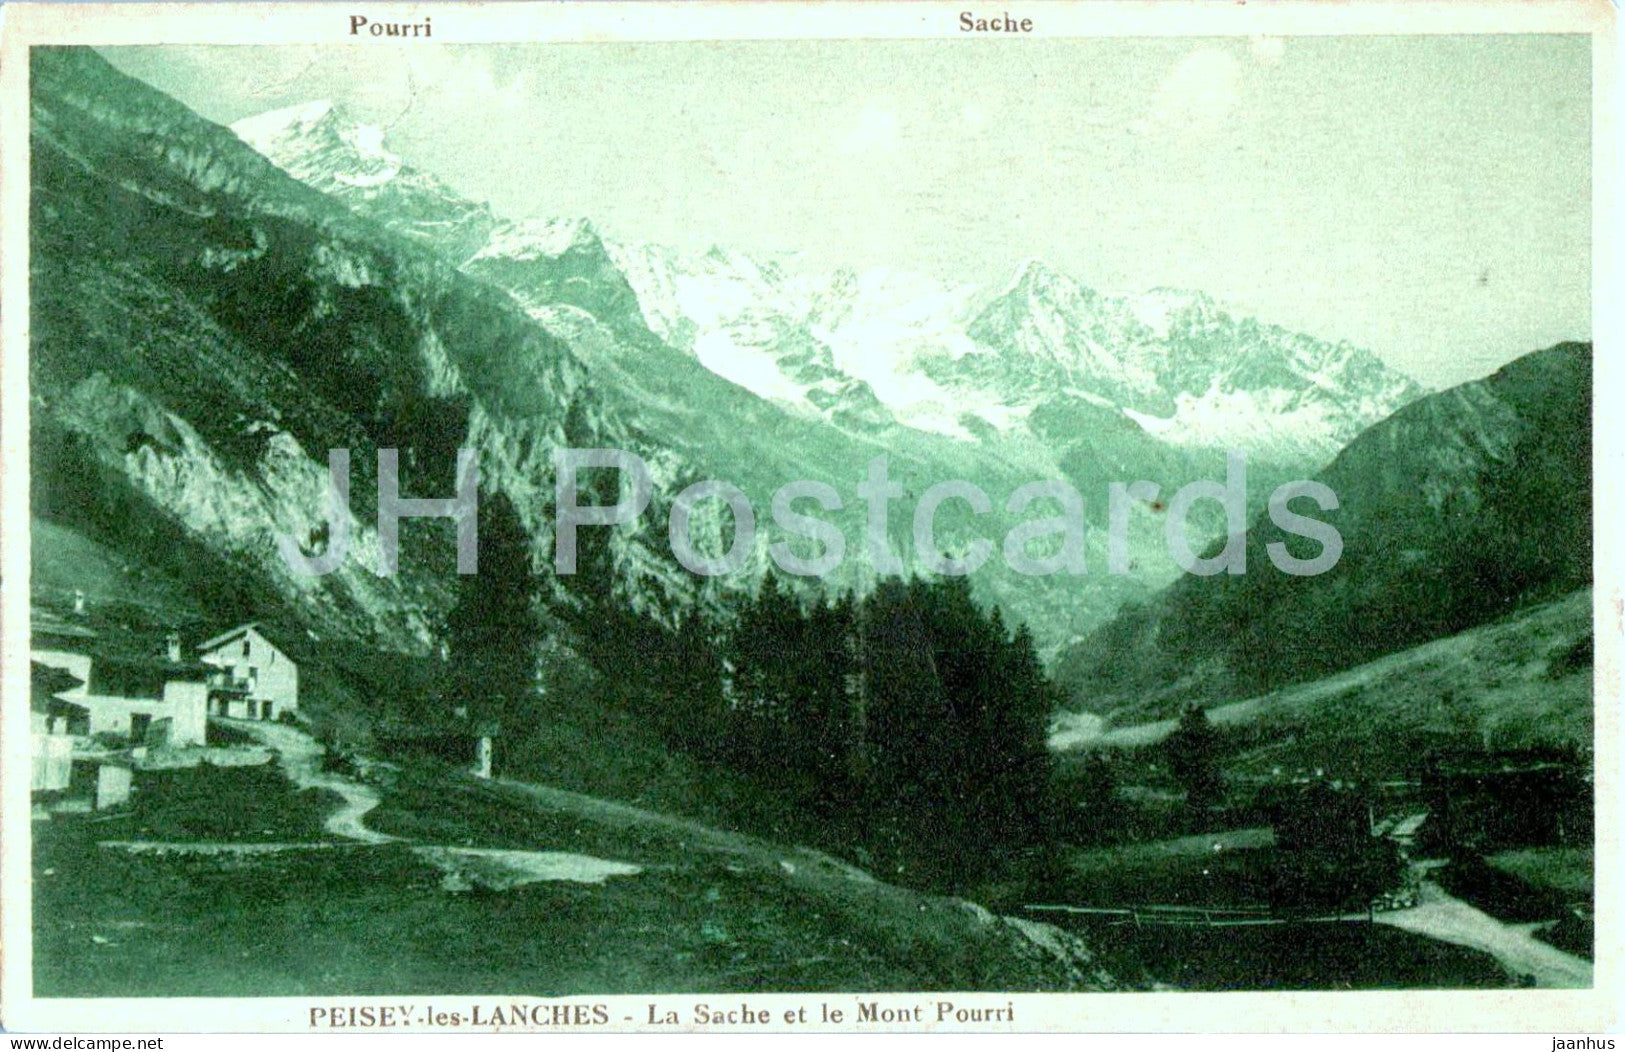 Peisey les Lanches - La Sache et le Mont Pourri - old postcard - France - unused - JH Postcards